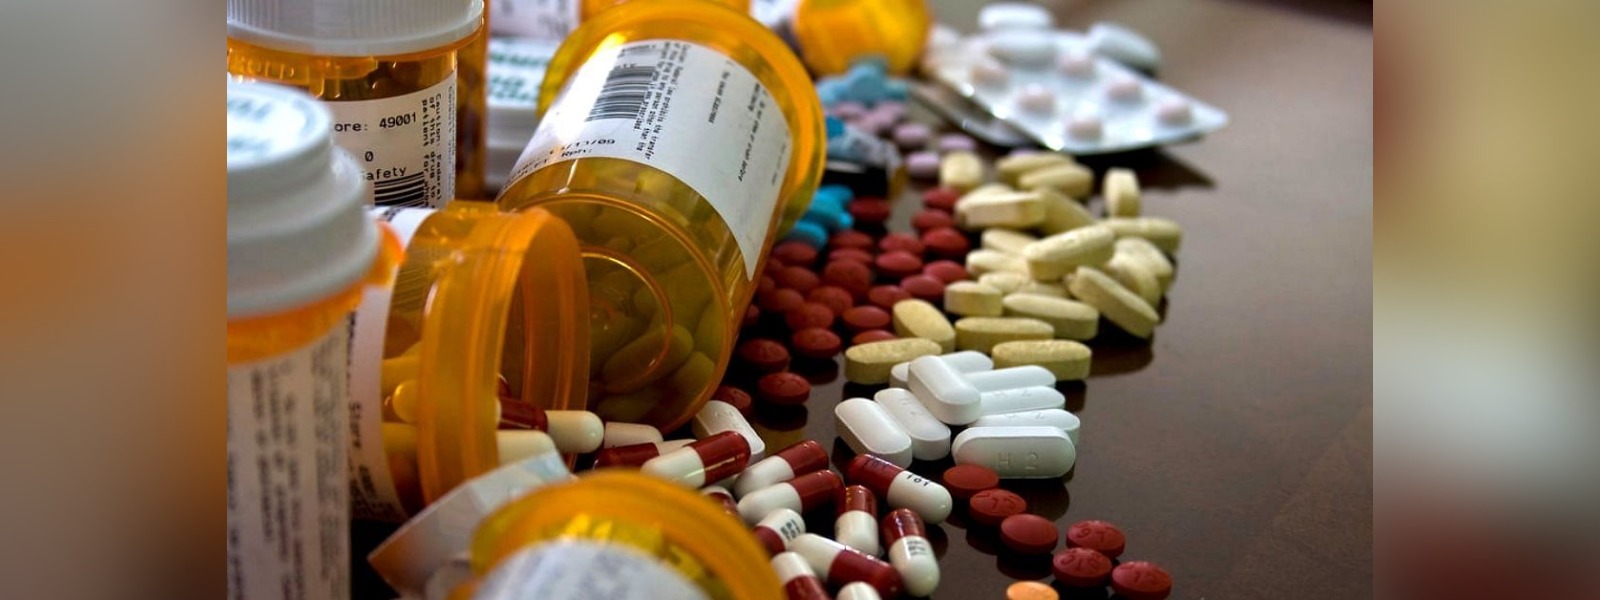 30% of medicine shortages addressed